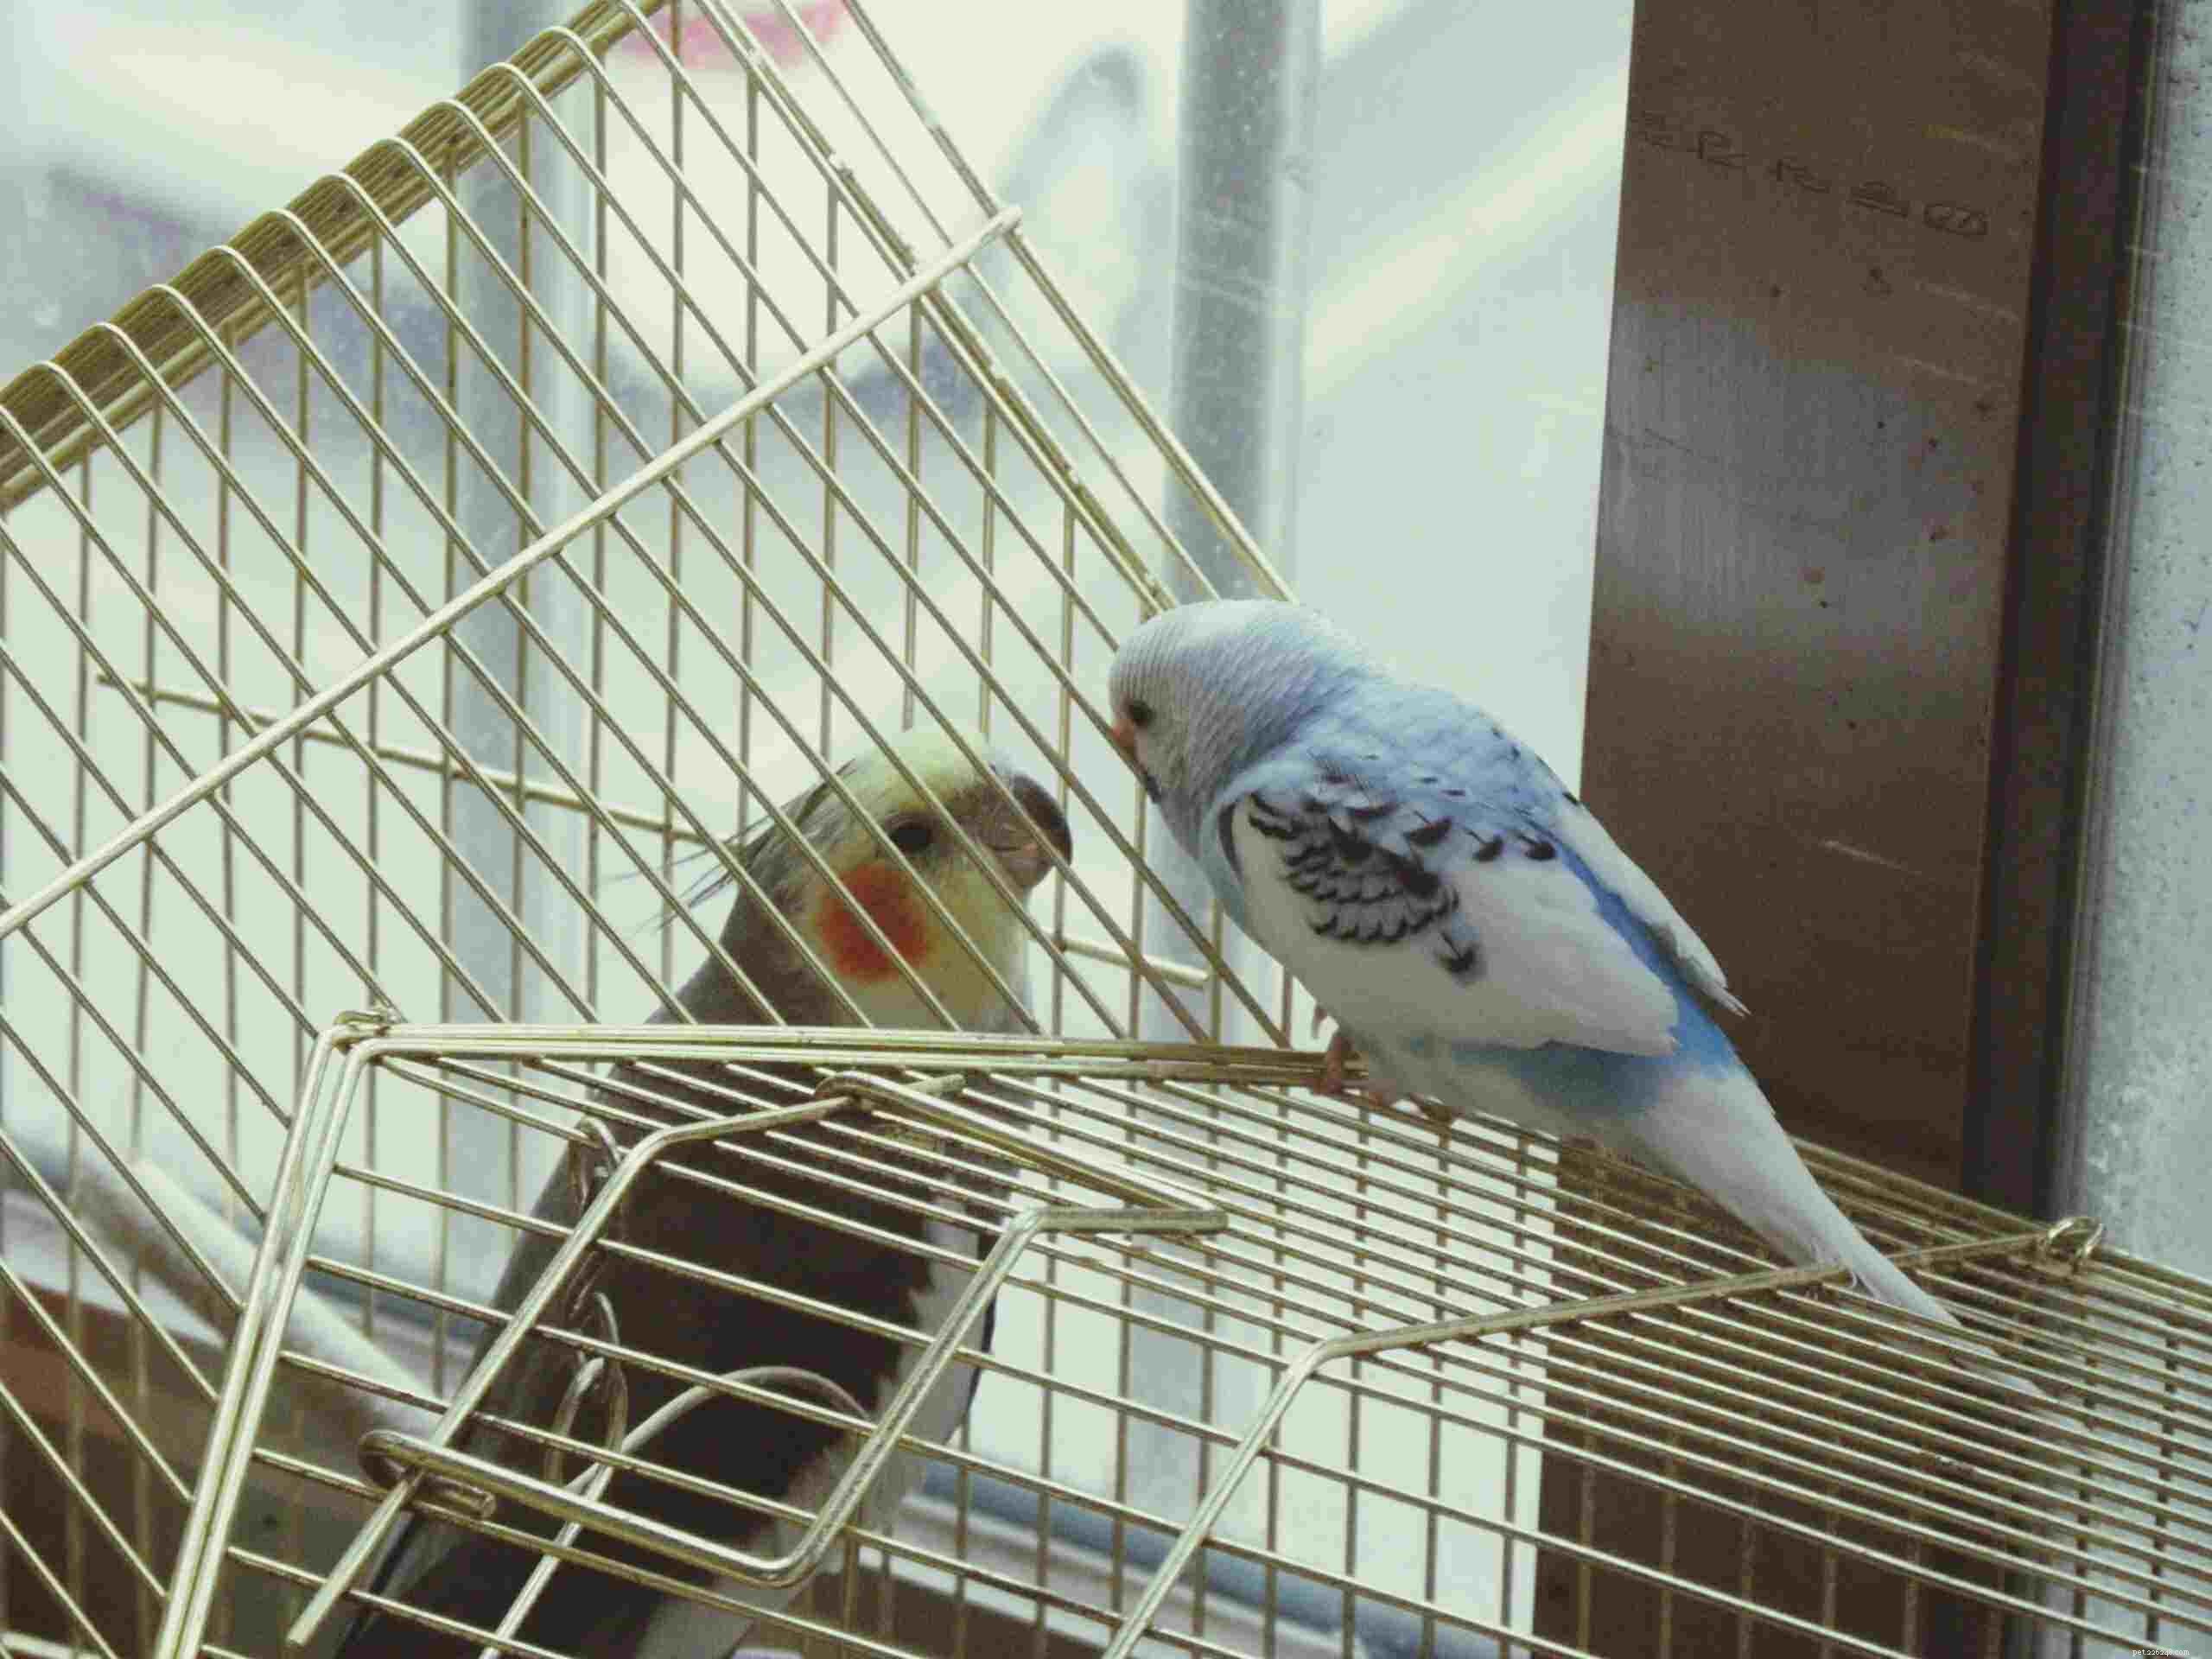 Apresentando um novo pássaro ao seu papagaio